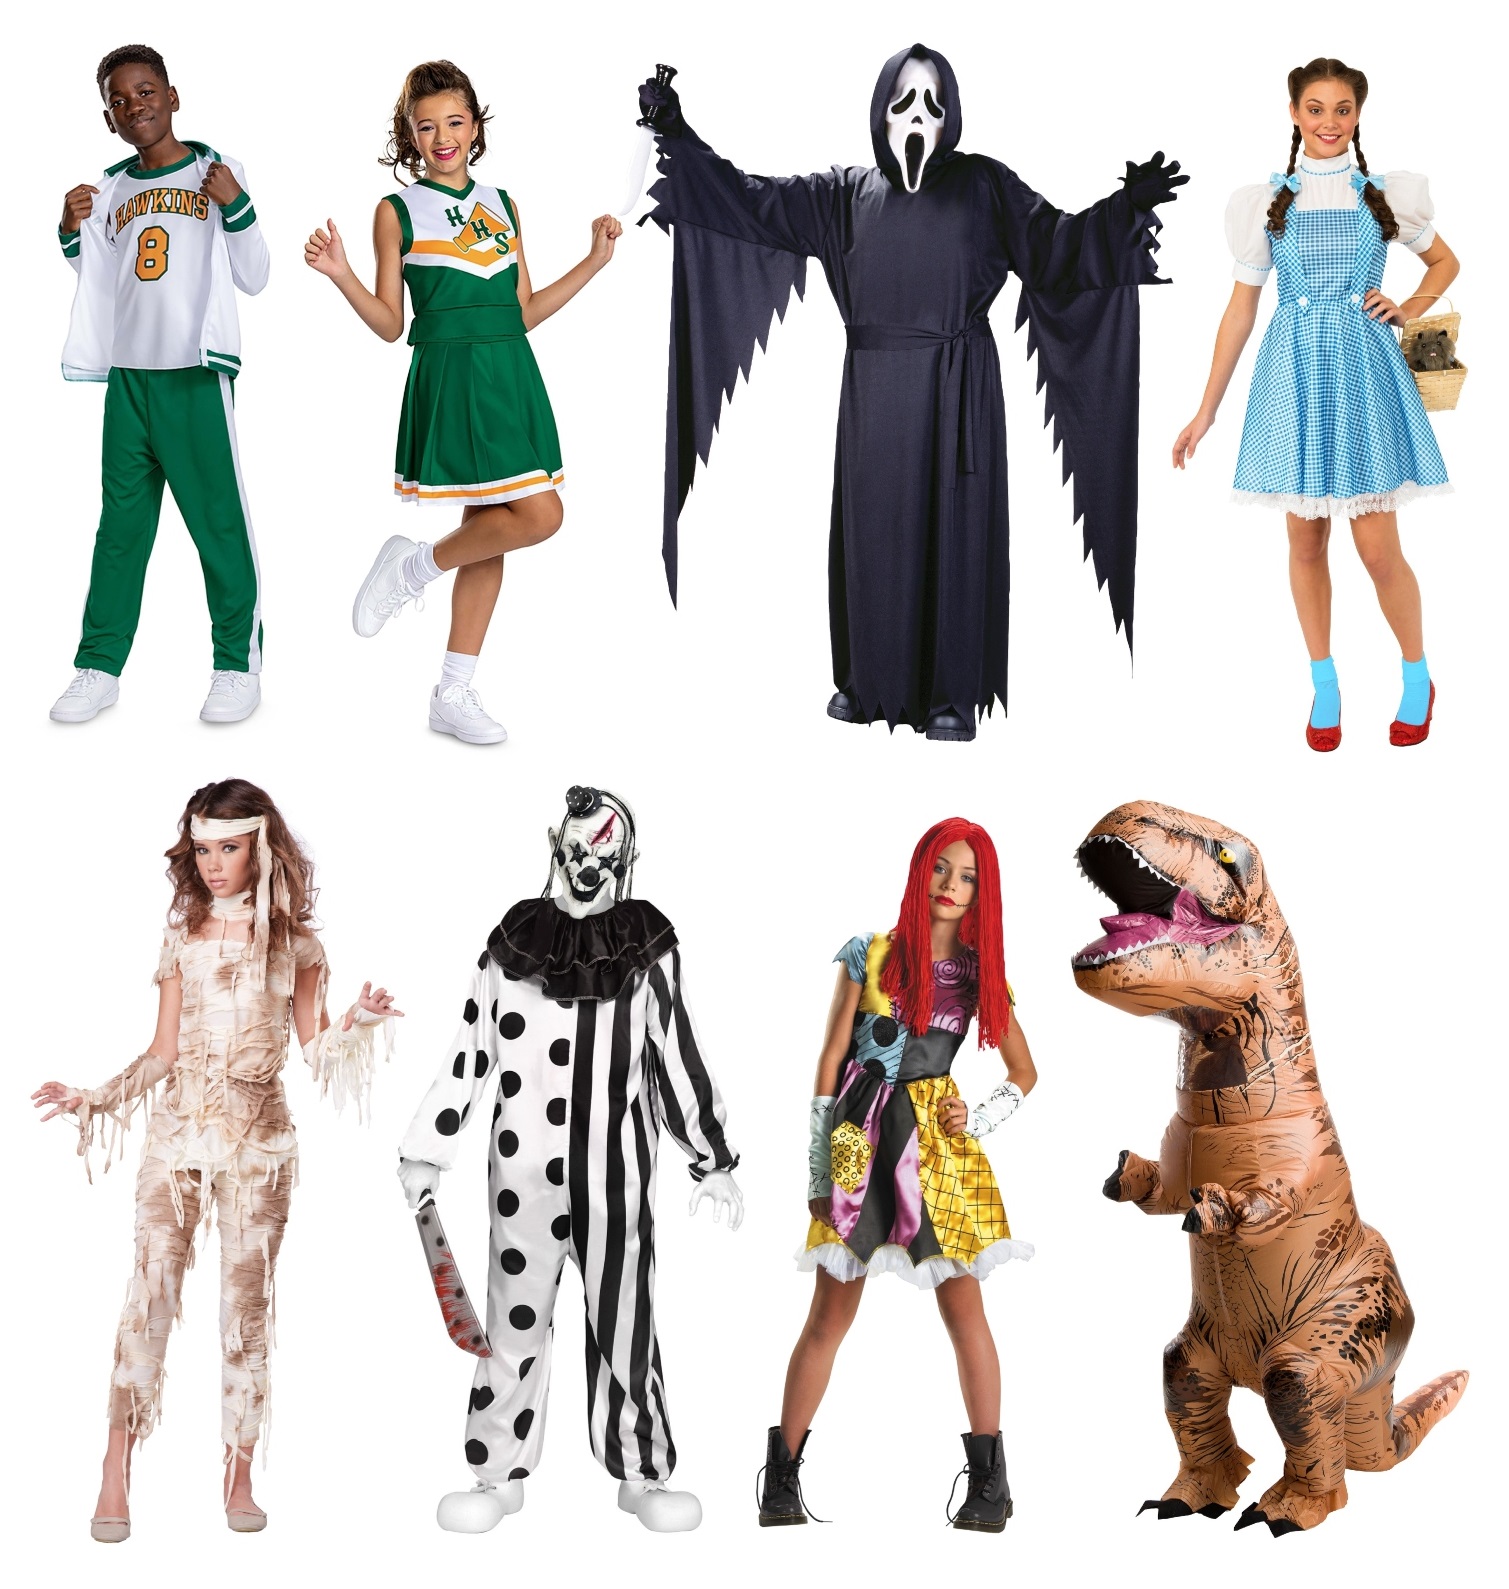 Tween Halloween Costume Ideas